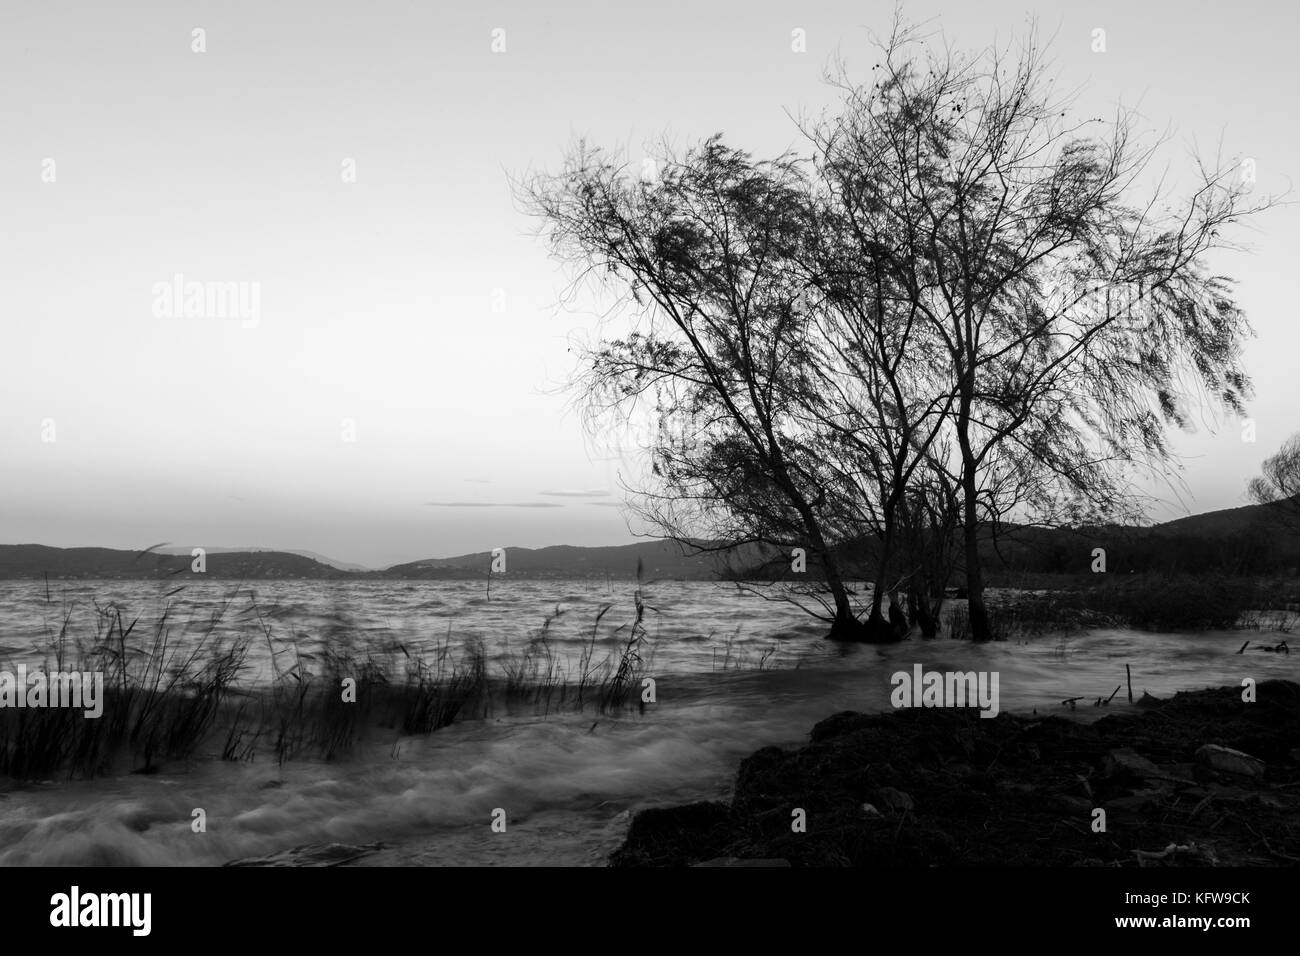 El fuerte viento en el lago, con árboles borrosa motion y ondas en el agua, con un cielo limpio, con tonos suaves en el fondo Foto de stock